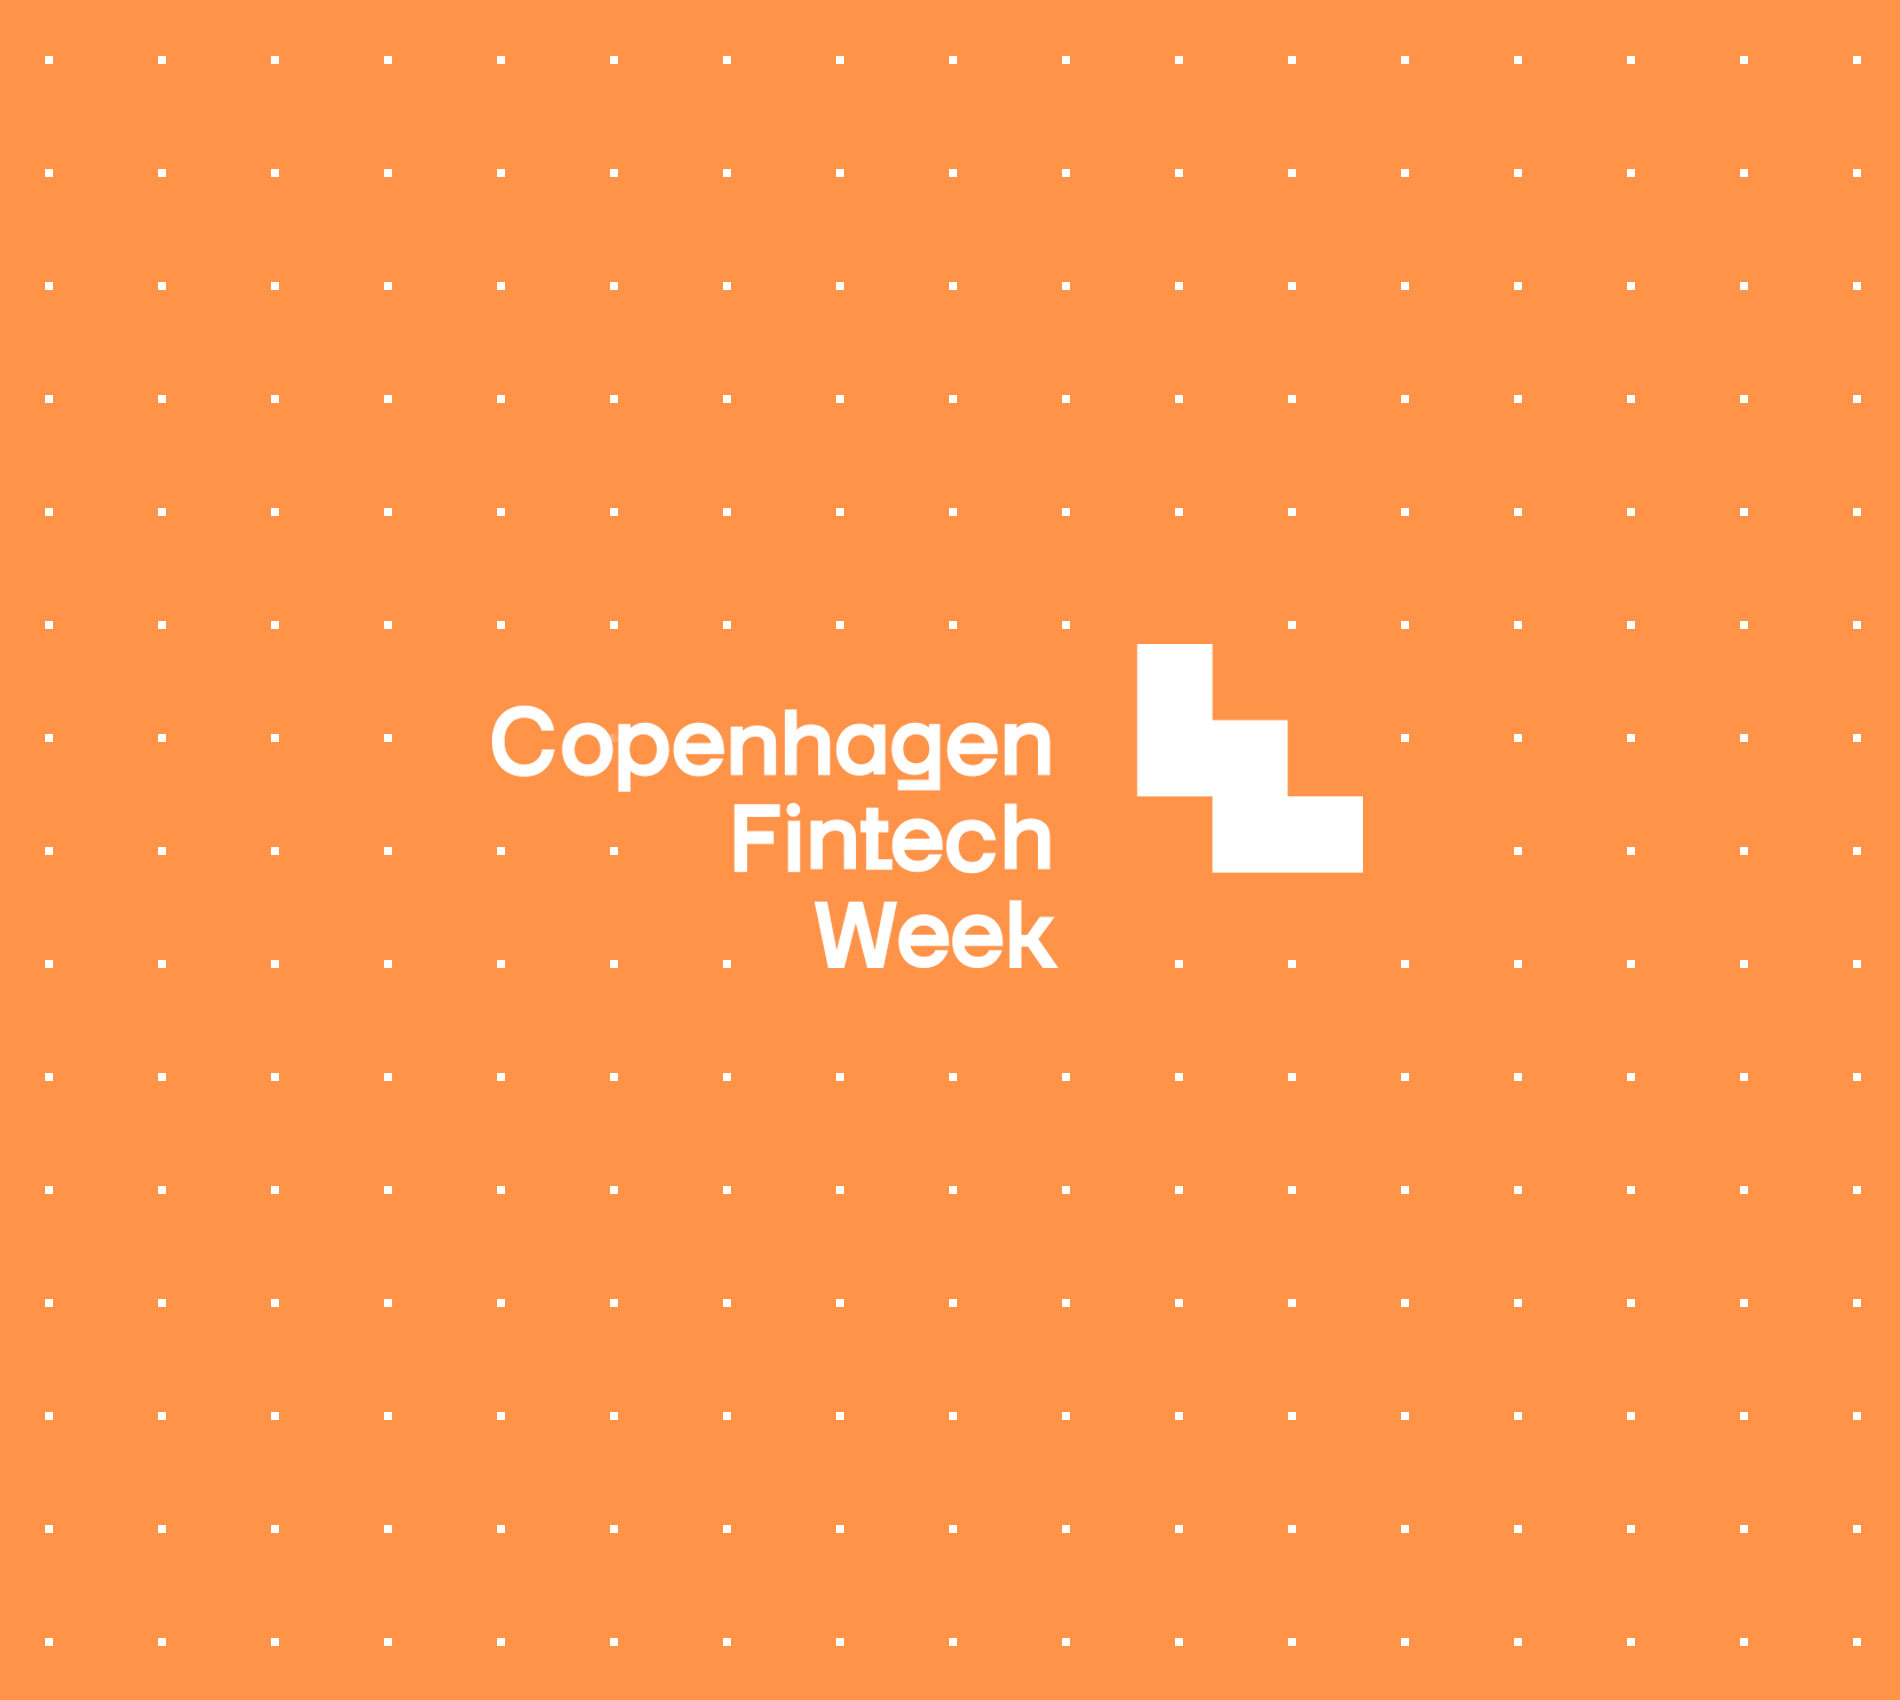 Copenhagen Fintech Week 2020 | Setembro, 2020